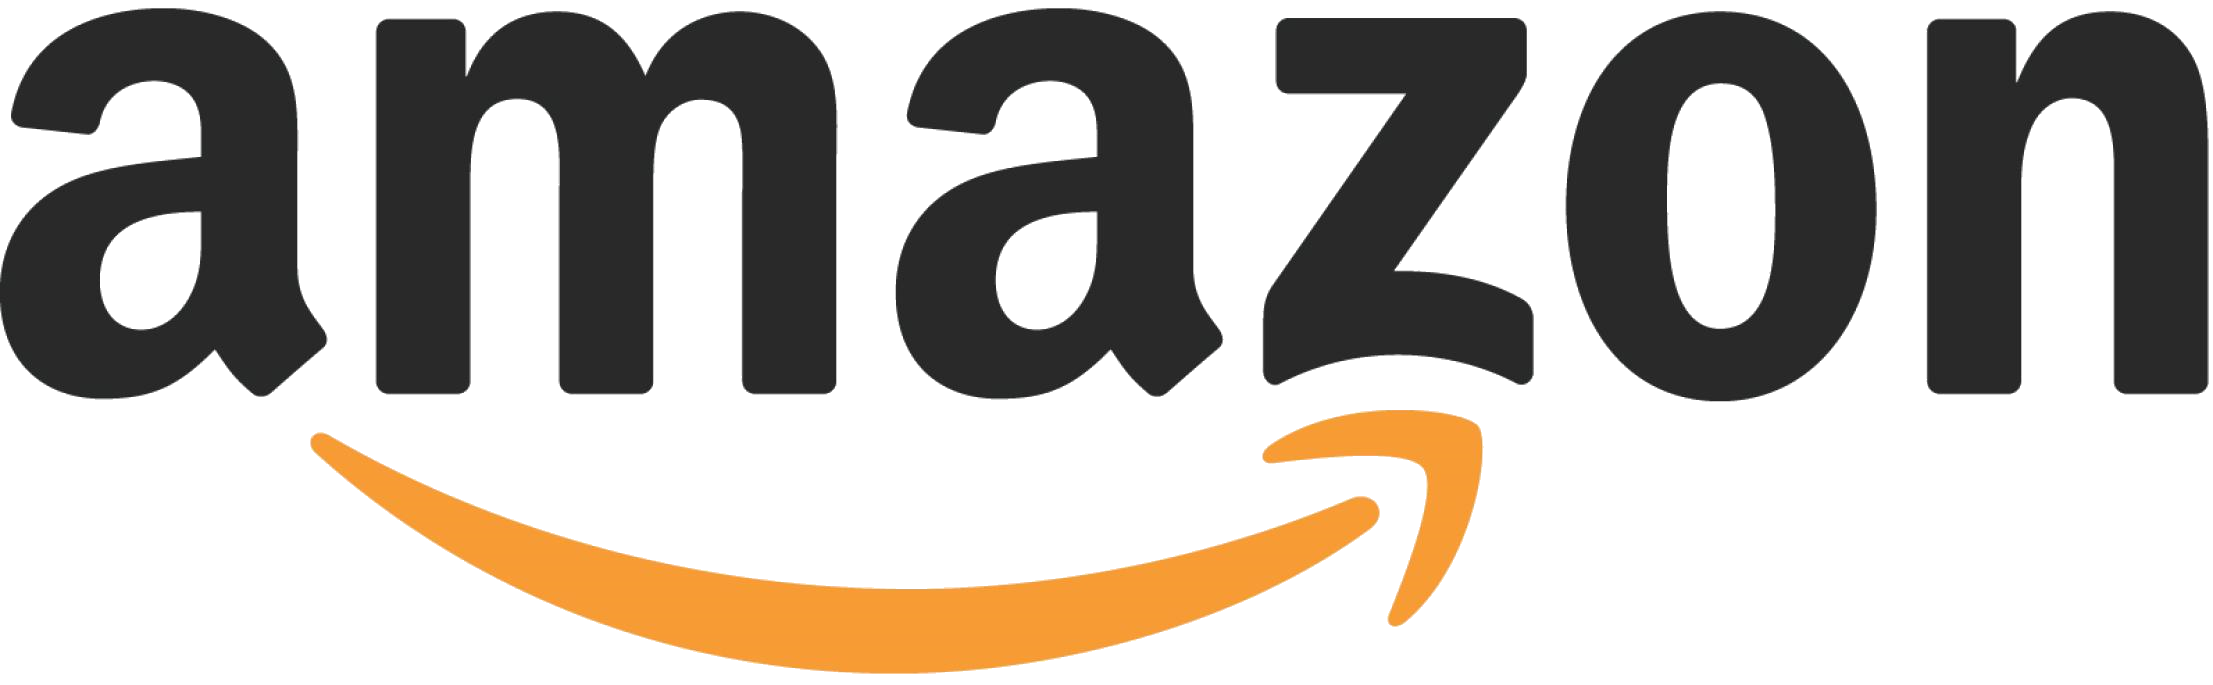 Amazon US